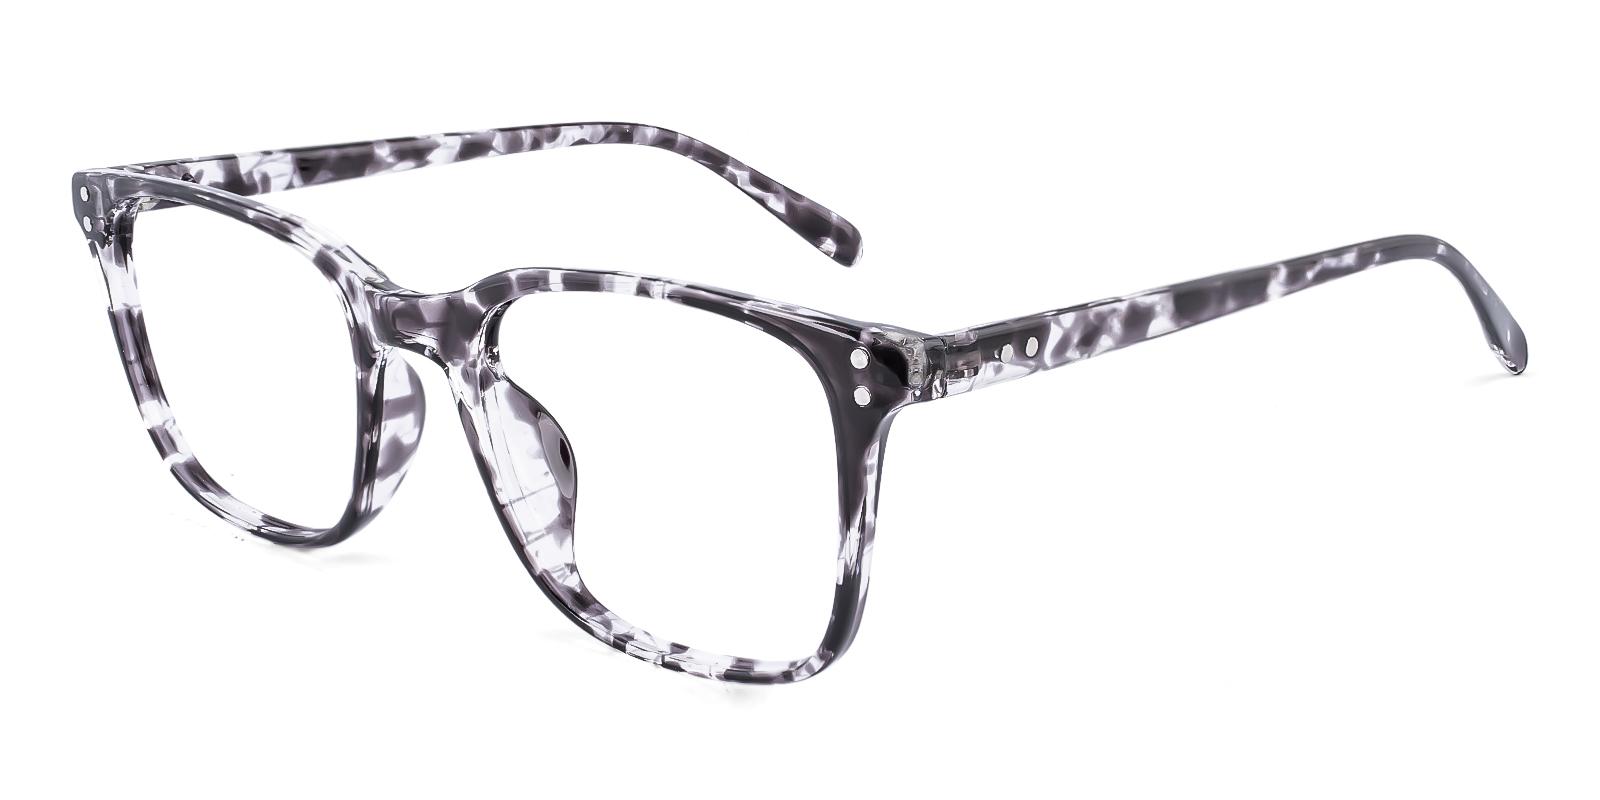 Clinoster Pattern Plastic Eyeglasses , UniversalBridgeFit Frames from ABBE Glasses